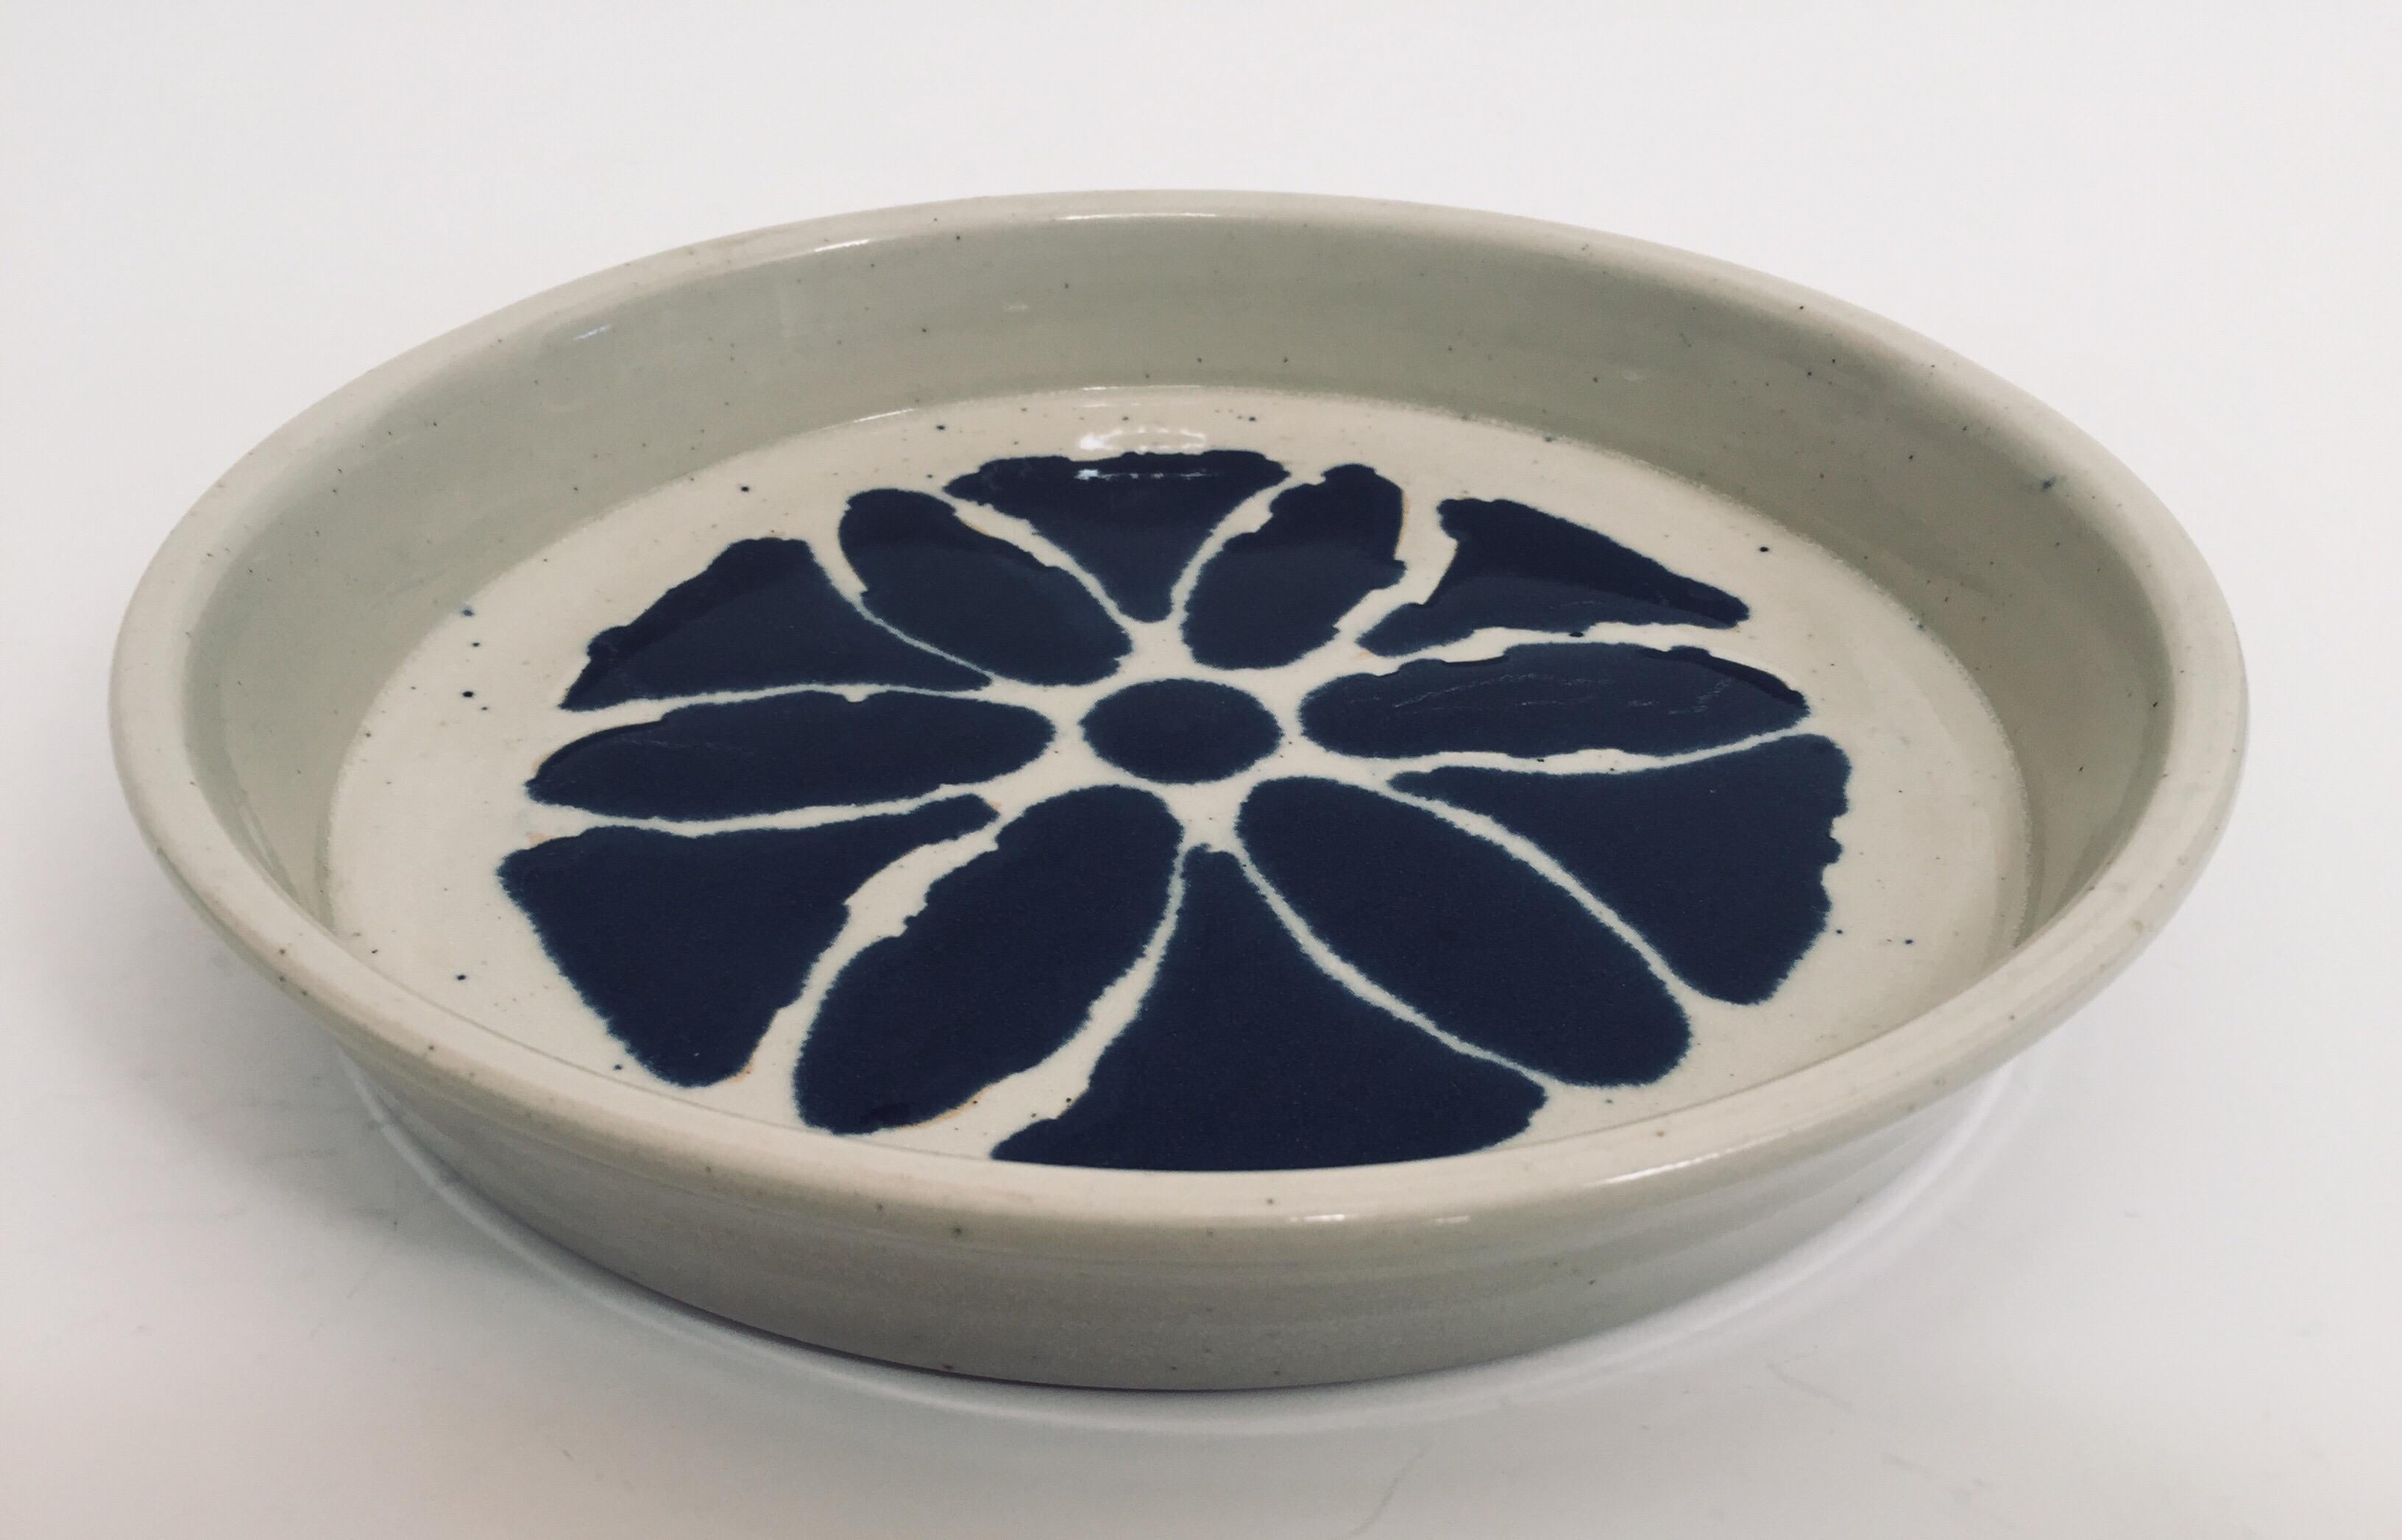 Radgedrehte Keramik mit weißer Glasur, verziert mit einem handgemalten blauen Blumenmuster.
Dies ist ein einzigartiges Objekt, das nach alter Art von Hand in einer kleinen handwerklichen Töpferei von Christy Johnson hergestellt wird. 
Handgefertigt